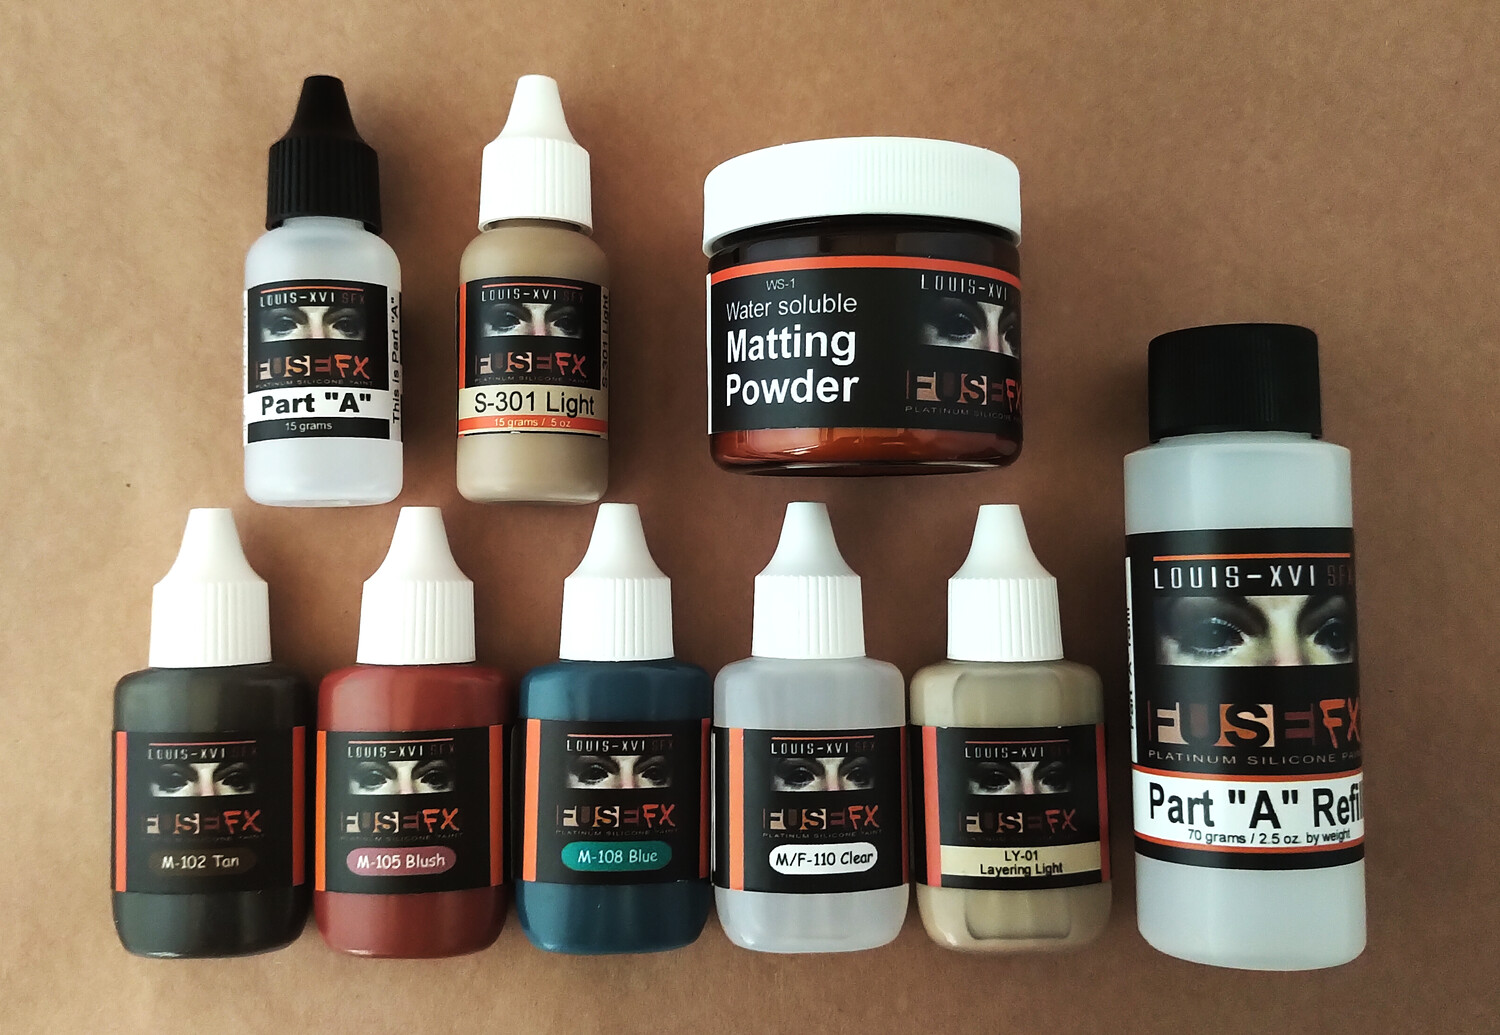 FuseFX Med Pro Paint Kit, Size: MPK - 30g kit, Colour: Trial Kit - Light